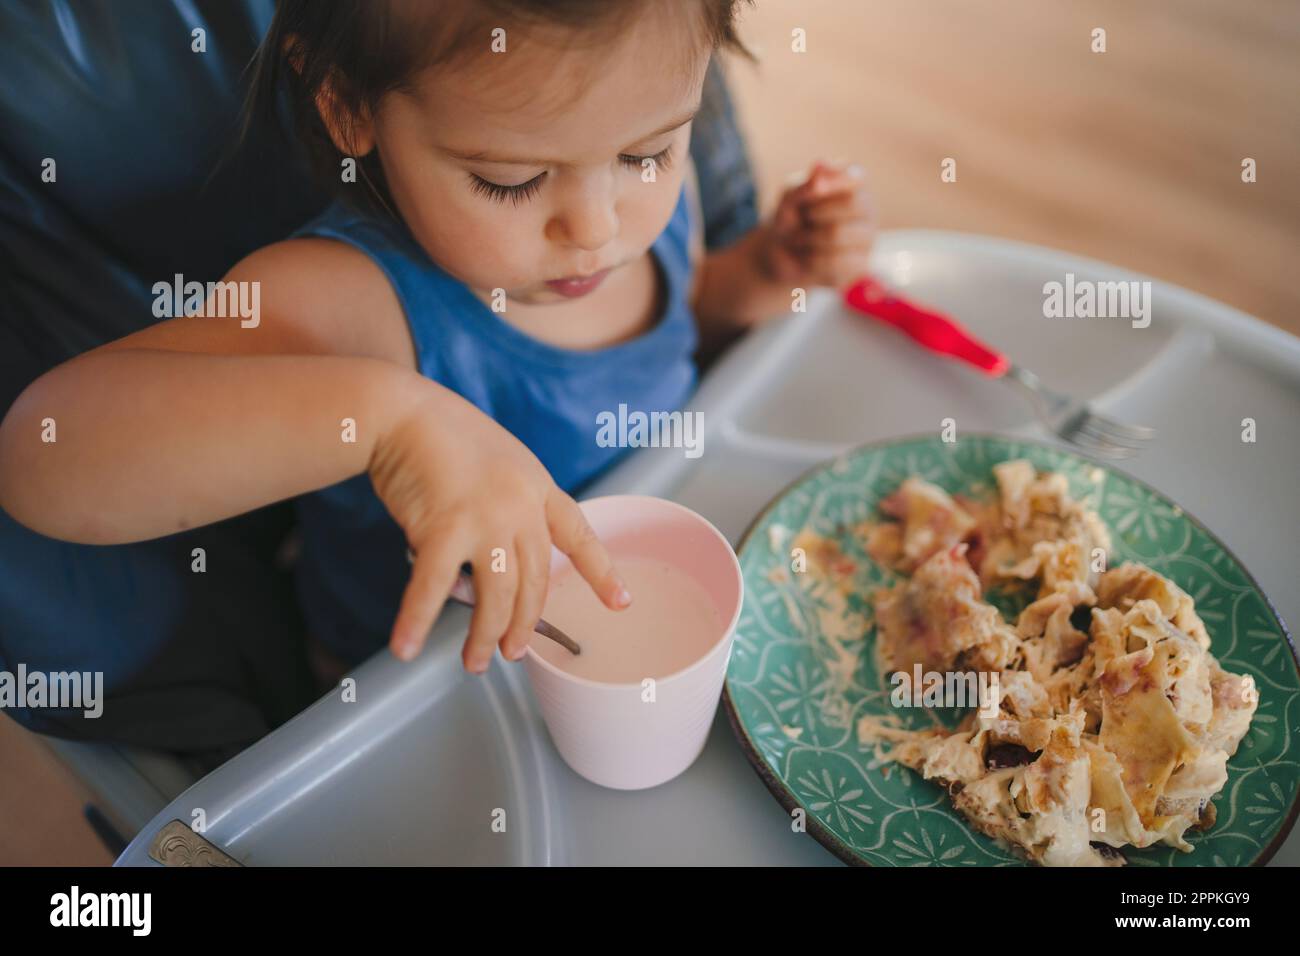 Ein kleines Mädchen lernt, sich selbst zu essen, während es in einem  Kinderstuhl sitzt und mit den Händen und einer Gabel vom Teller isst.  Gesunde Ernährung, Lebensstil Stockfotografie - Alamy